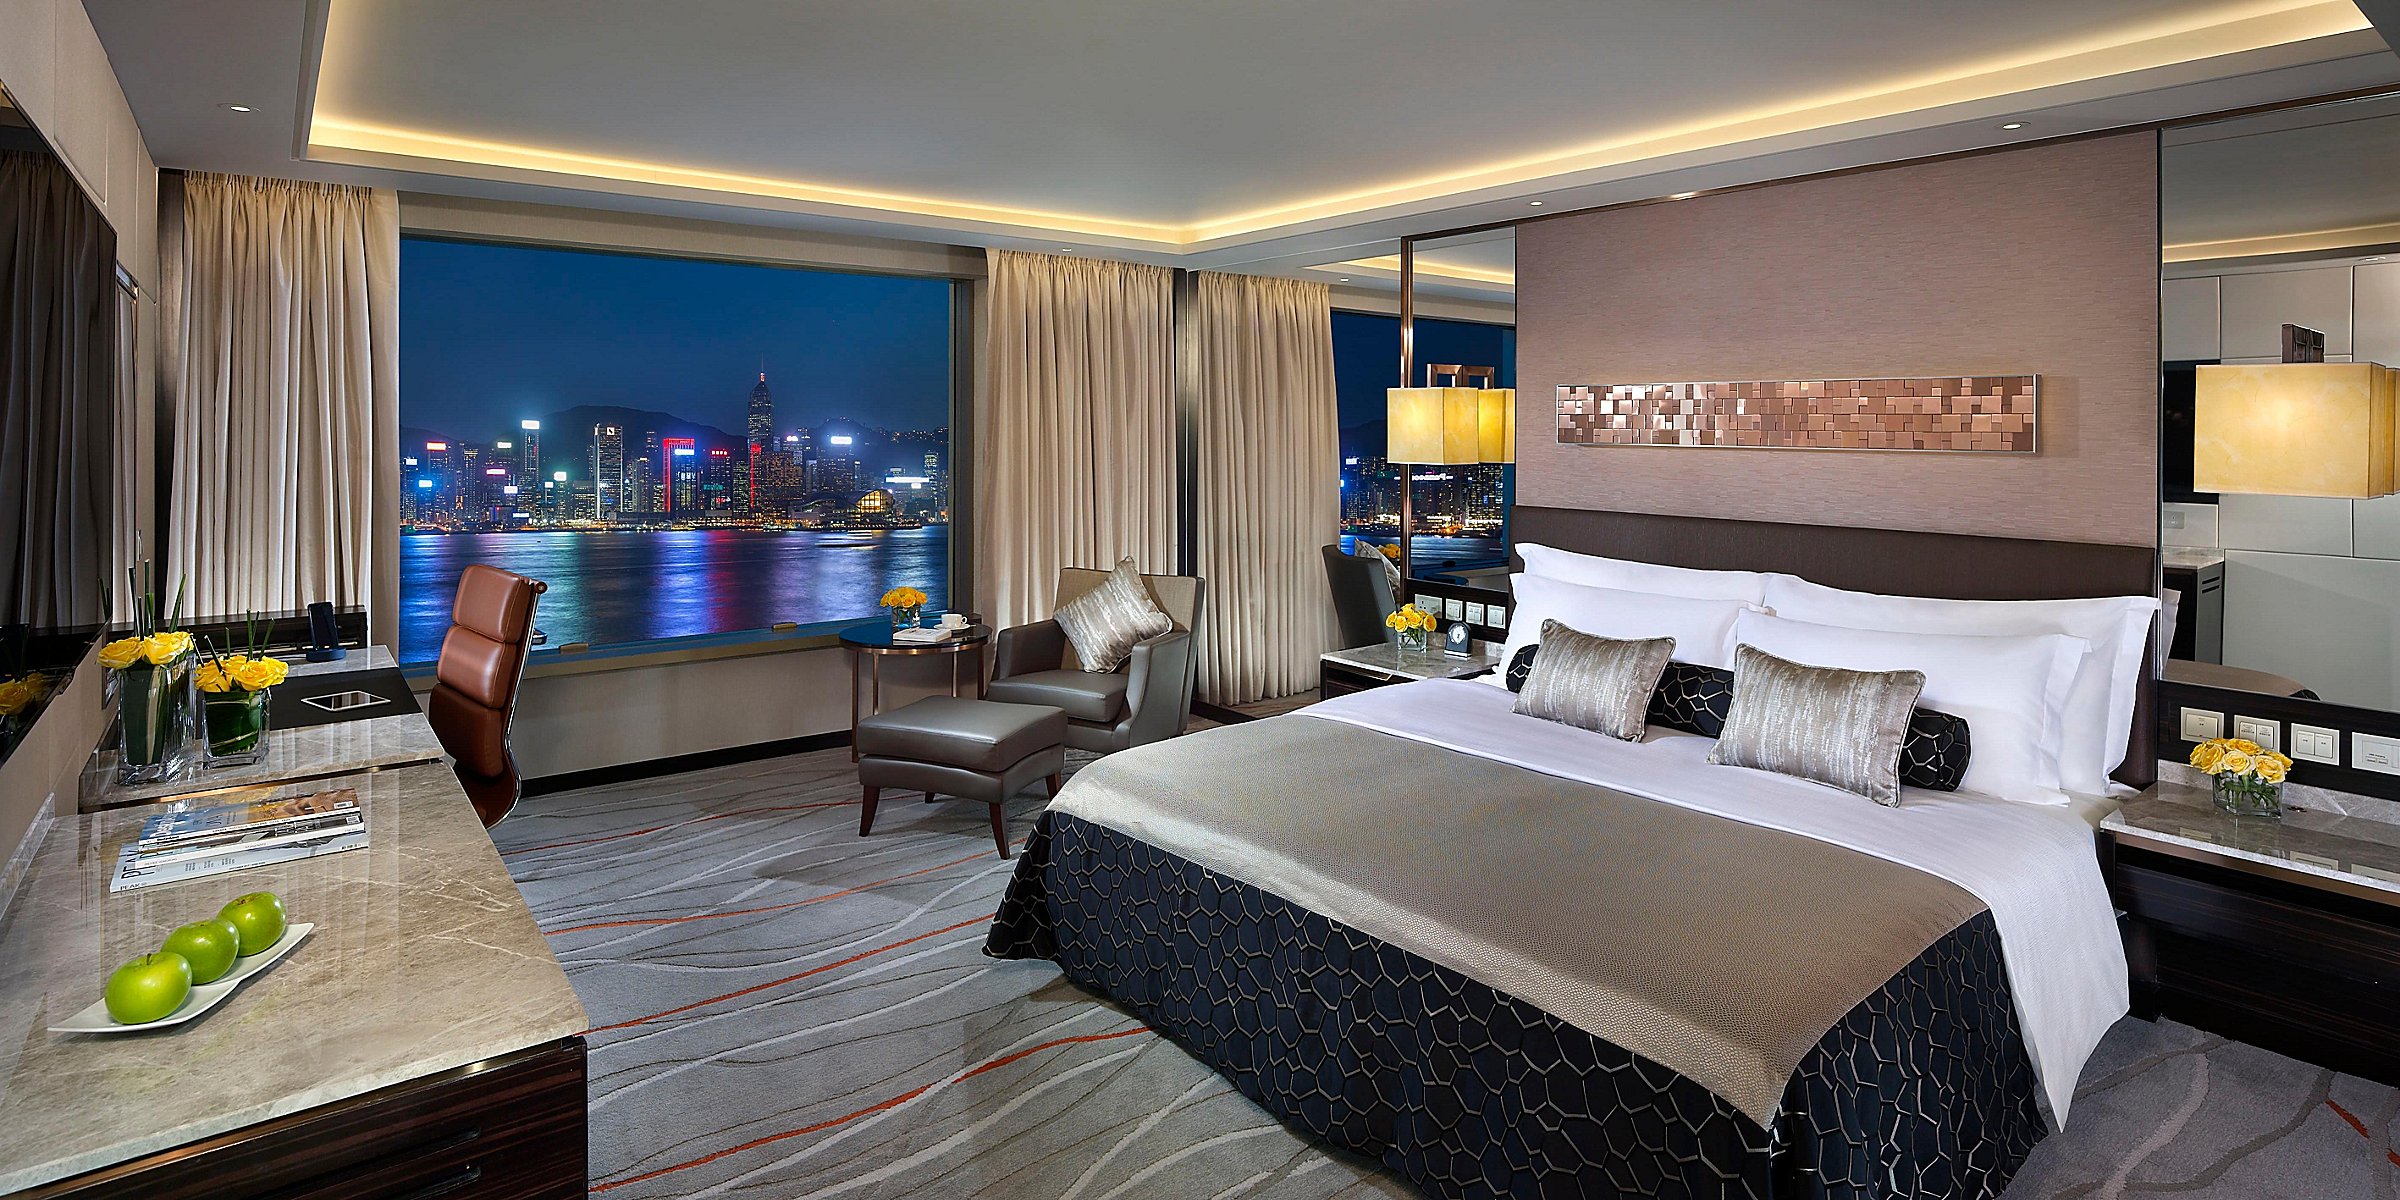 Intercontinental Grand Stanford Hong Kong Hong Kong Luxury Hotels